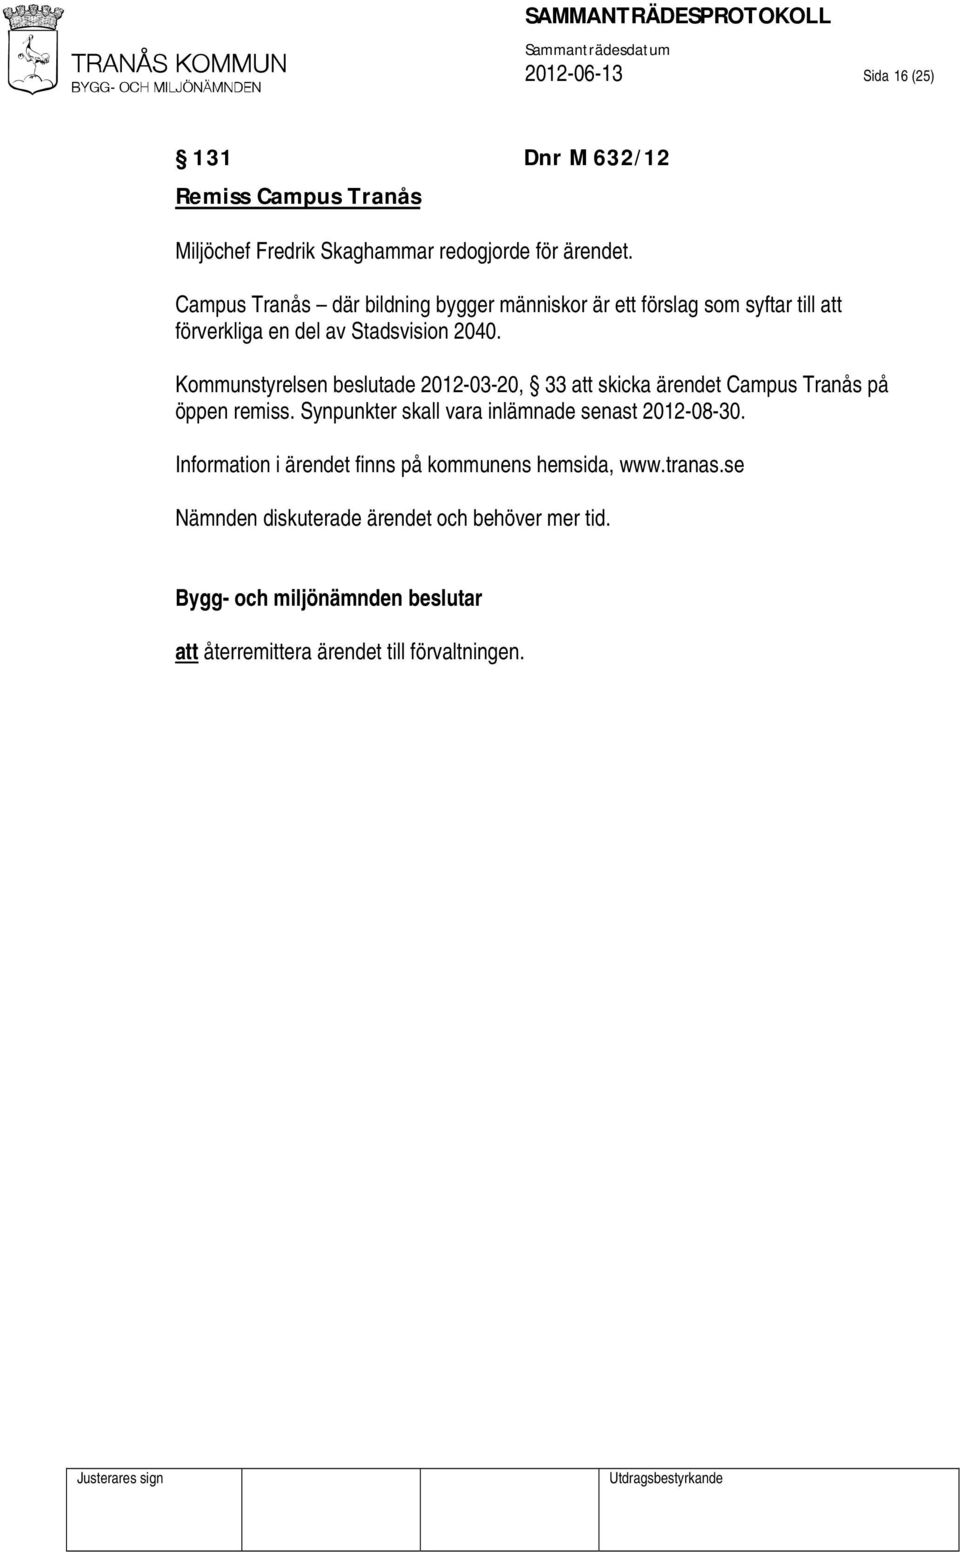 Kommunstyrelsen beslutade 2012-03-20, 33 att skicka ärendet Campus Tranås på öppen remiss.